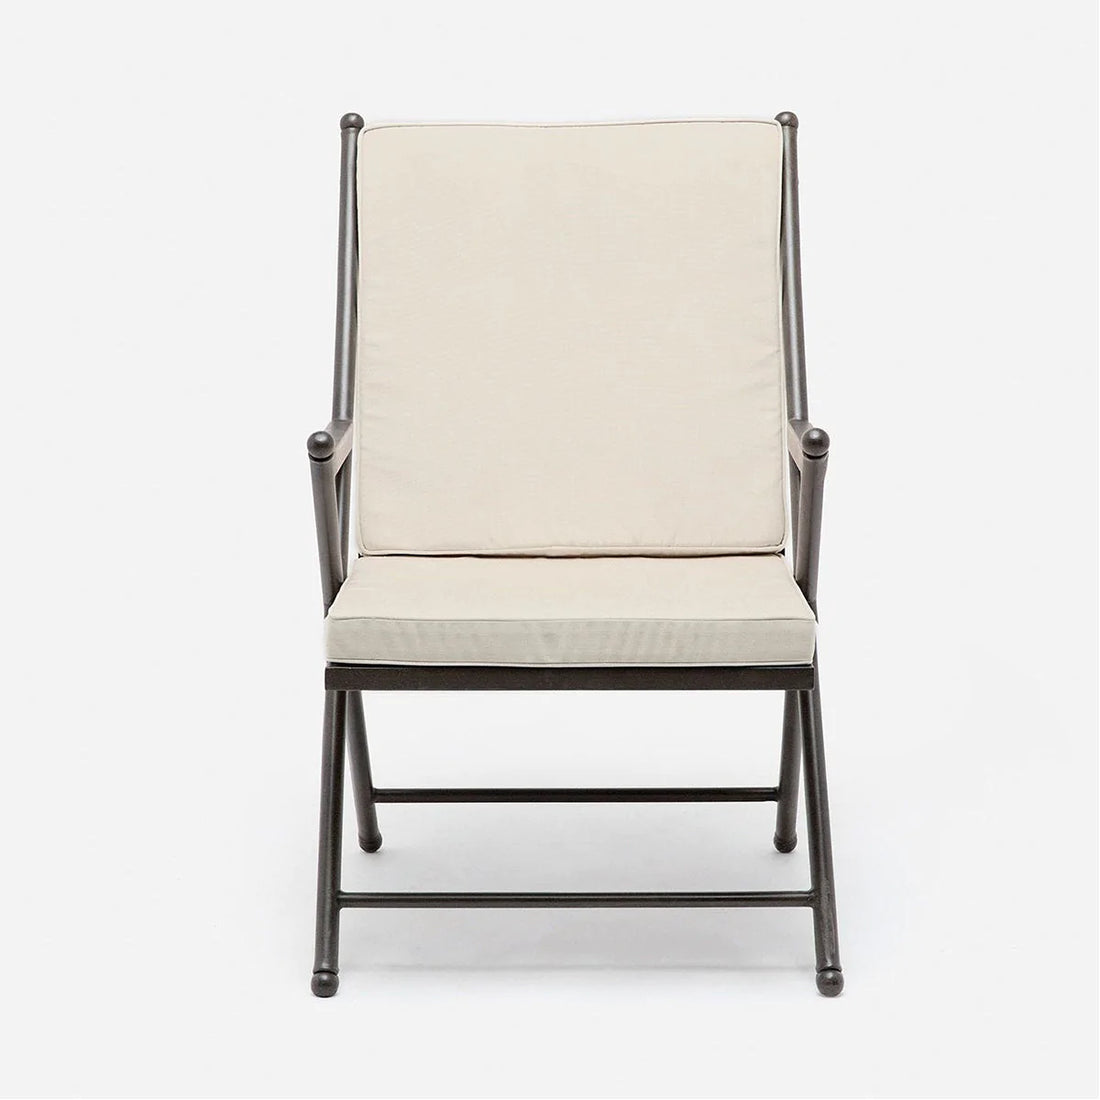 Made Goods Balta Metal Outdoor Dining Chair, Alsek Fabric